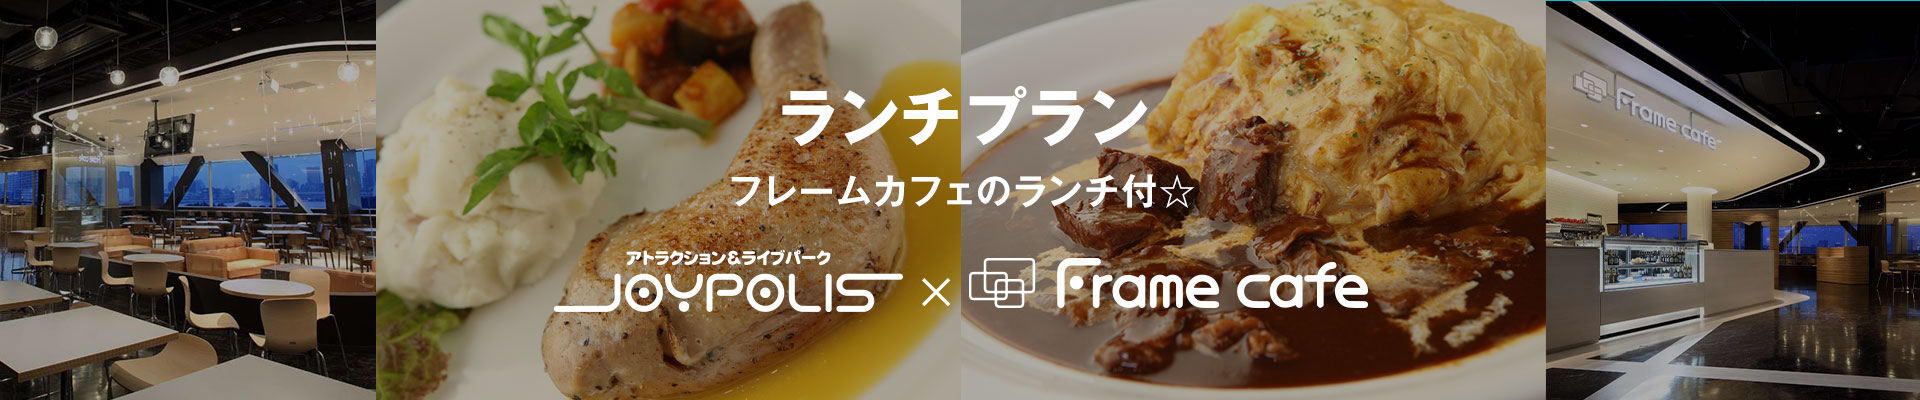 ランチプラン Frame cafeのランチ付☆ 東京ジョイポリス×Frame cafe